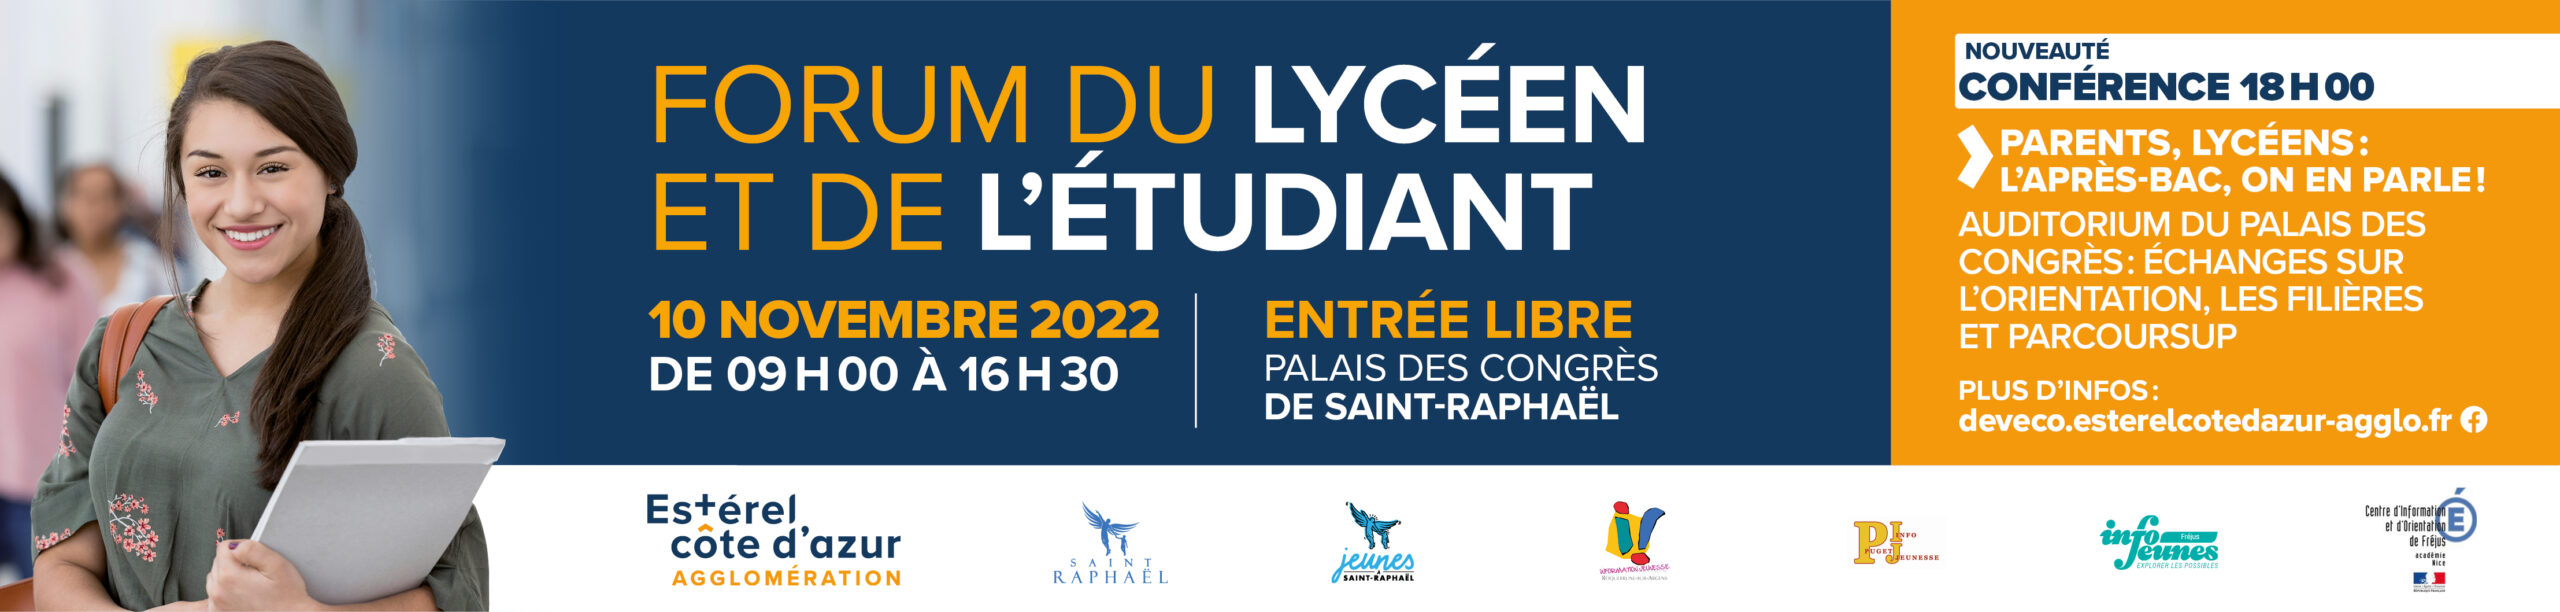 Forum Lyceen Etudiant Actu2 scaled Forum du Lycéen et de l'Étudiant - 25e édition